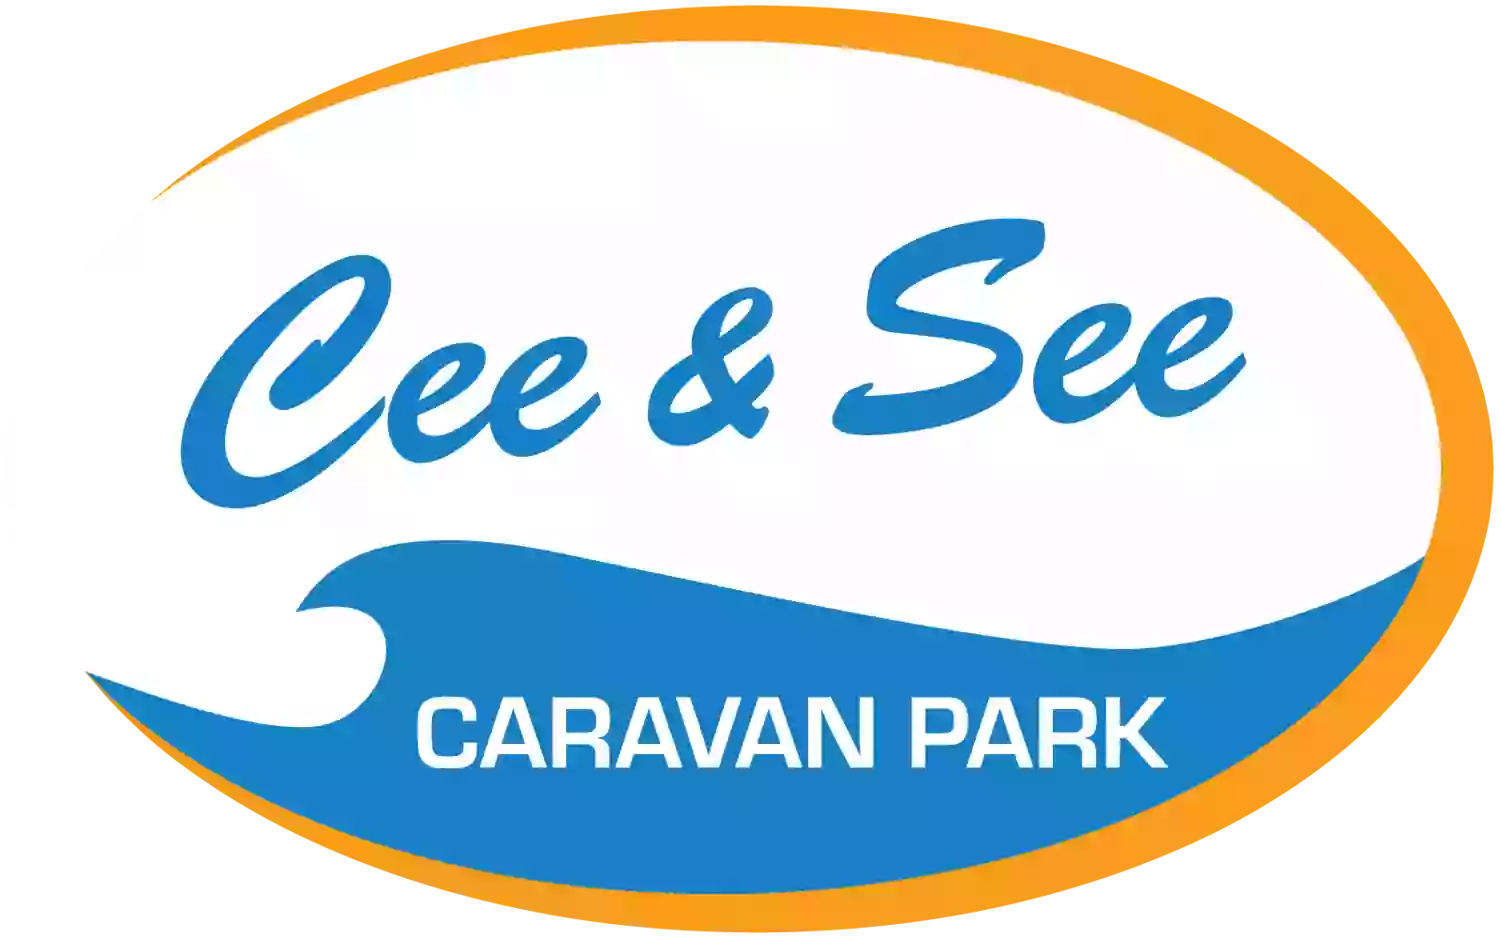 Cee & See Caravan Park